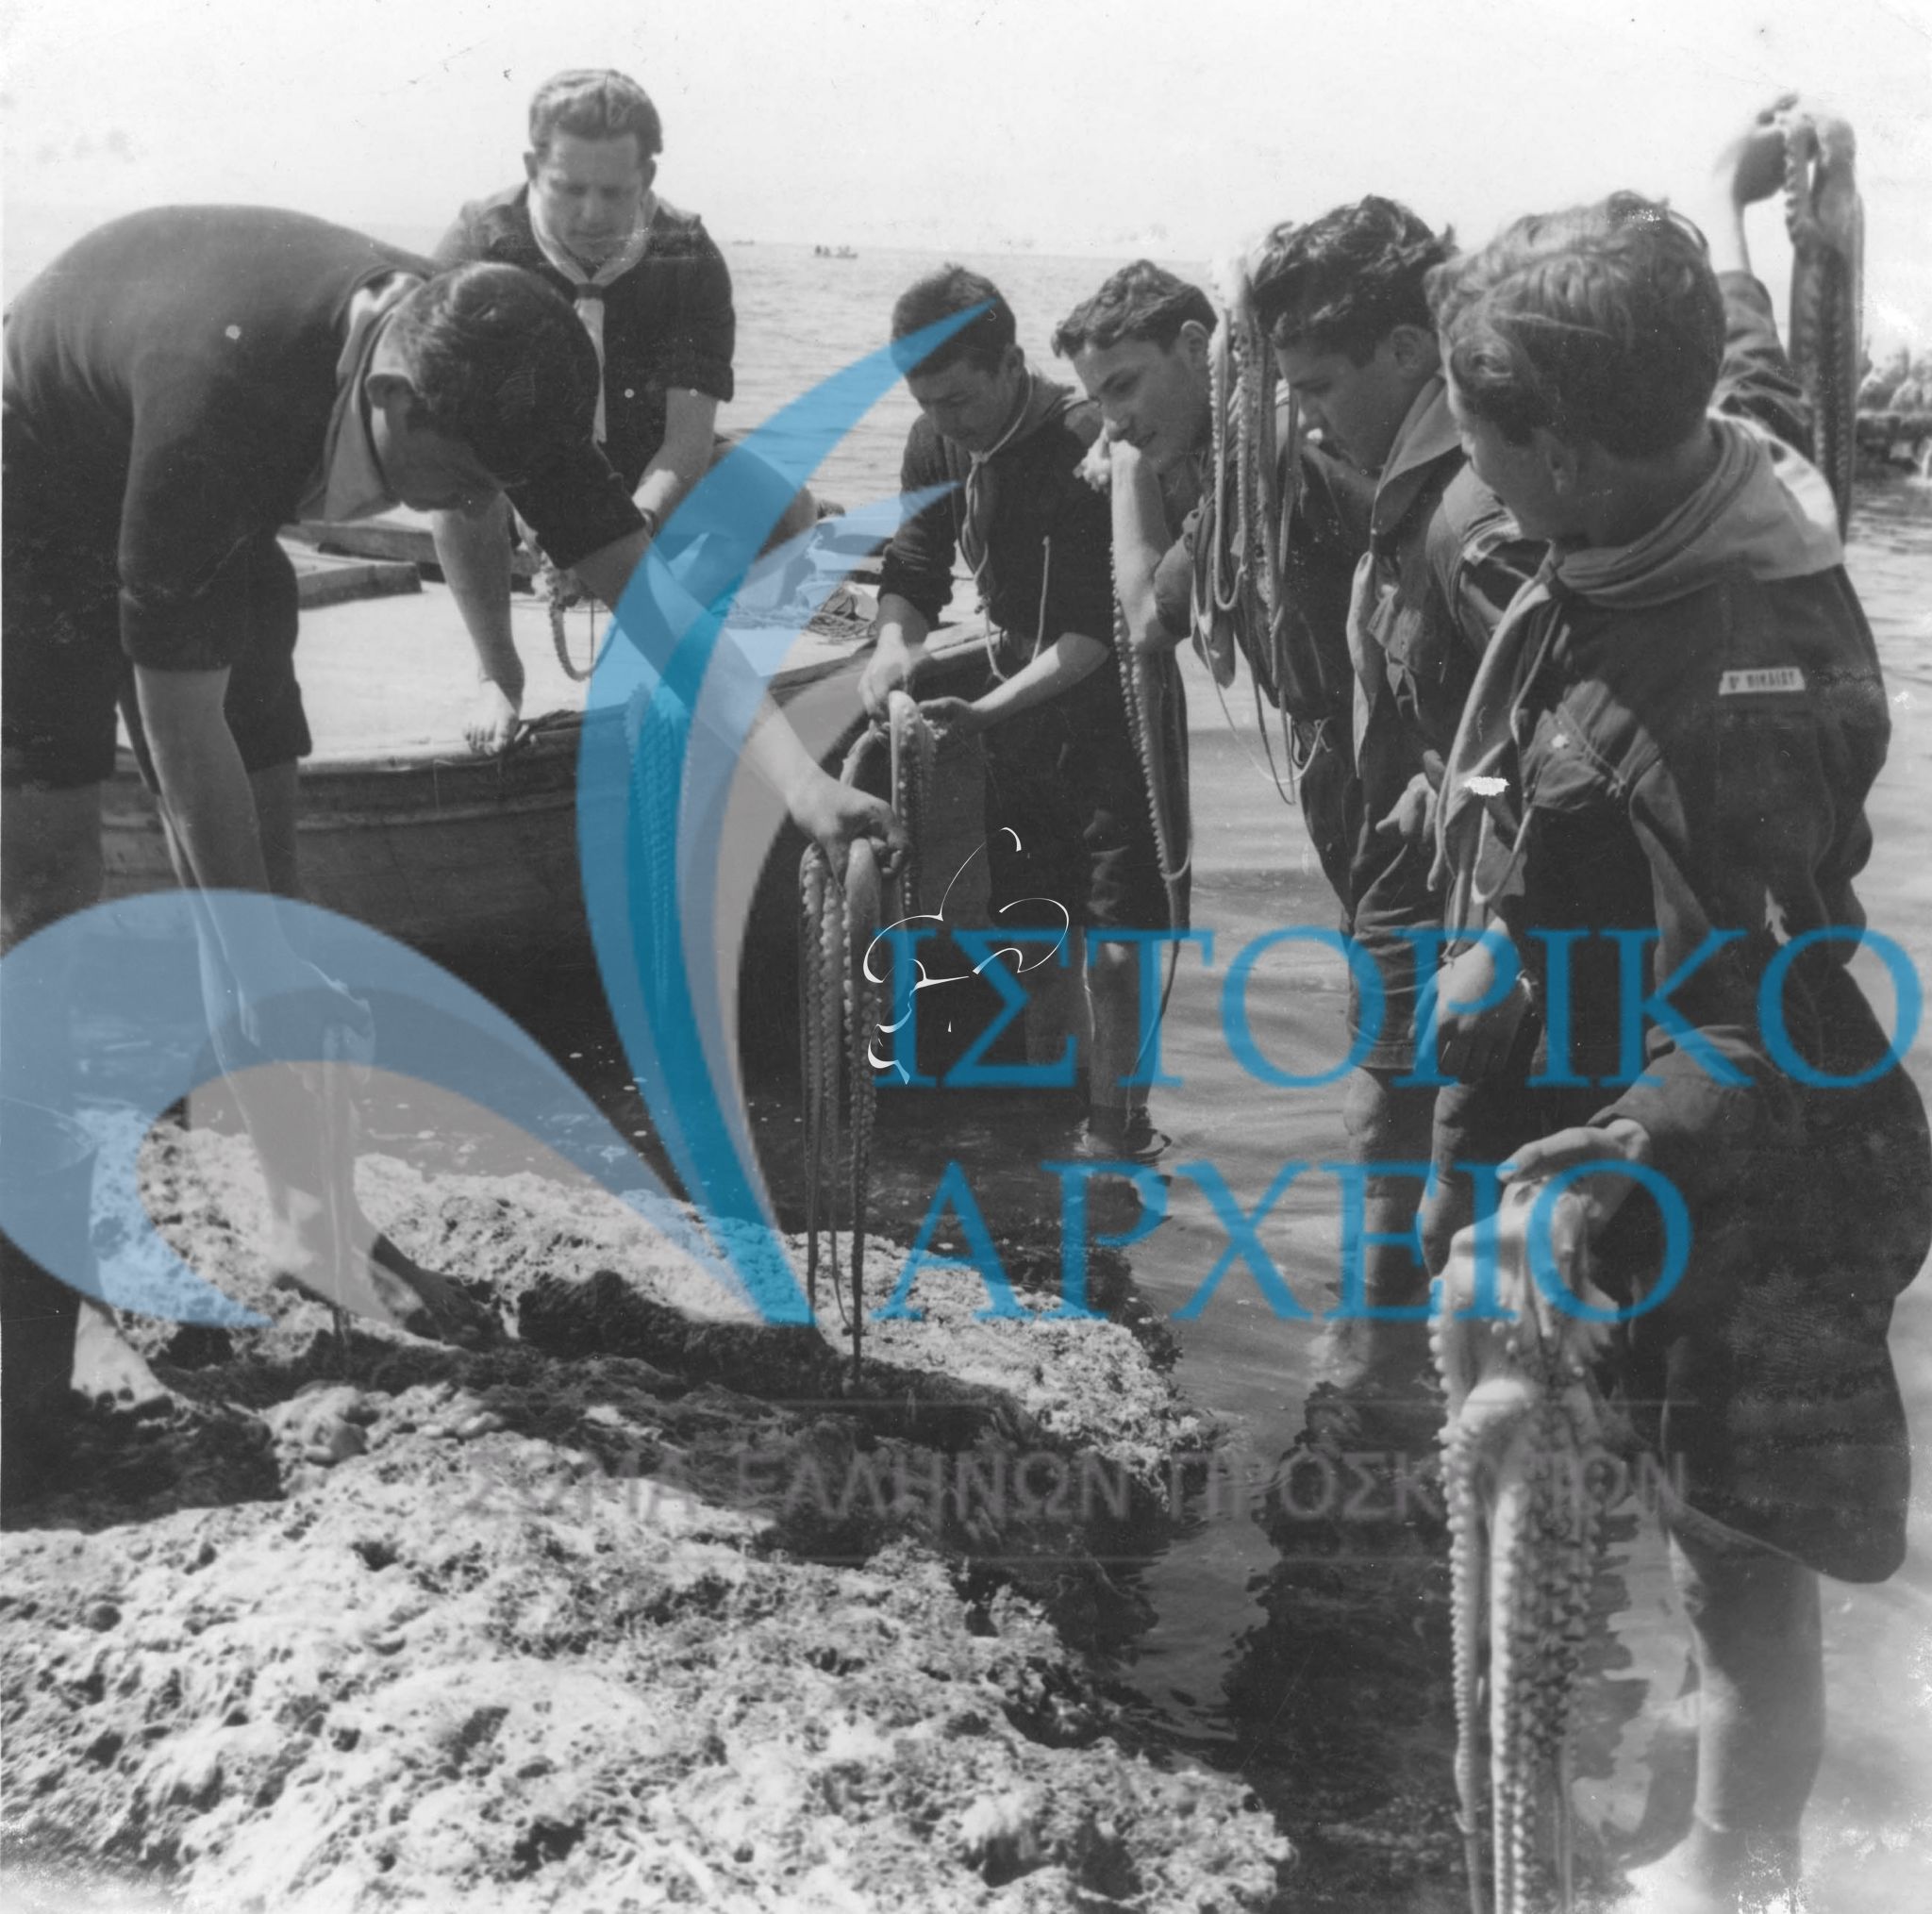 Πρόσκοποι της 3ης Ομάδας Νίκαιας μετρούν τα χταπόδια που ψάρεψαν στην εκδρομή τους στην Γλυφάδα τον Απρίλιο του 1948. Η φωτογραφία είχε δημοσιευθεί στο περιοδικό "Ναυτική Ελλάς" τον ίδιο χρόνο.